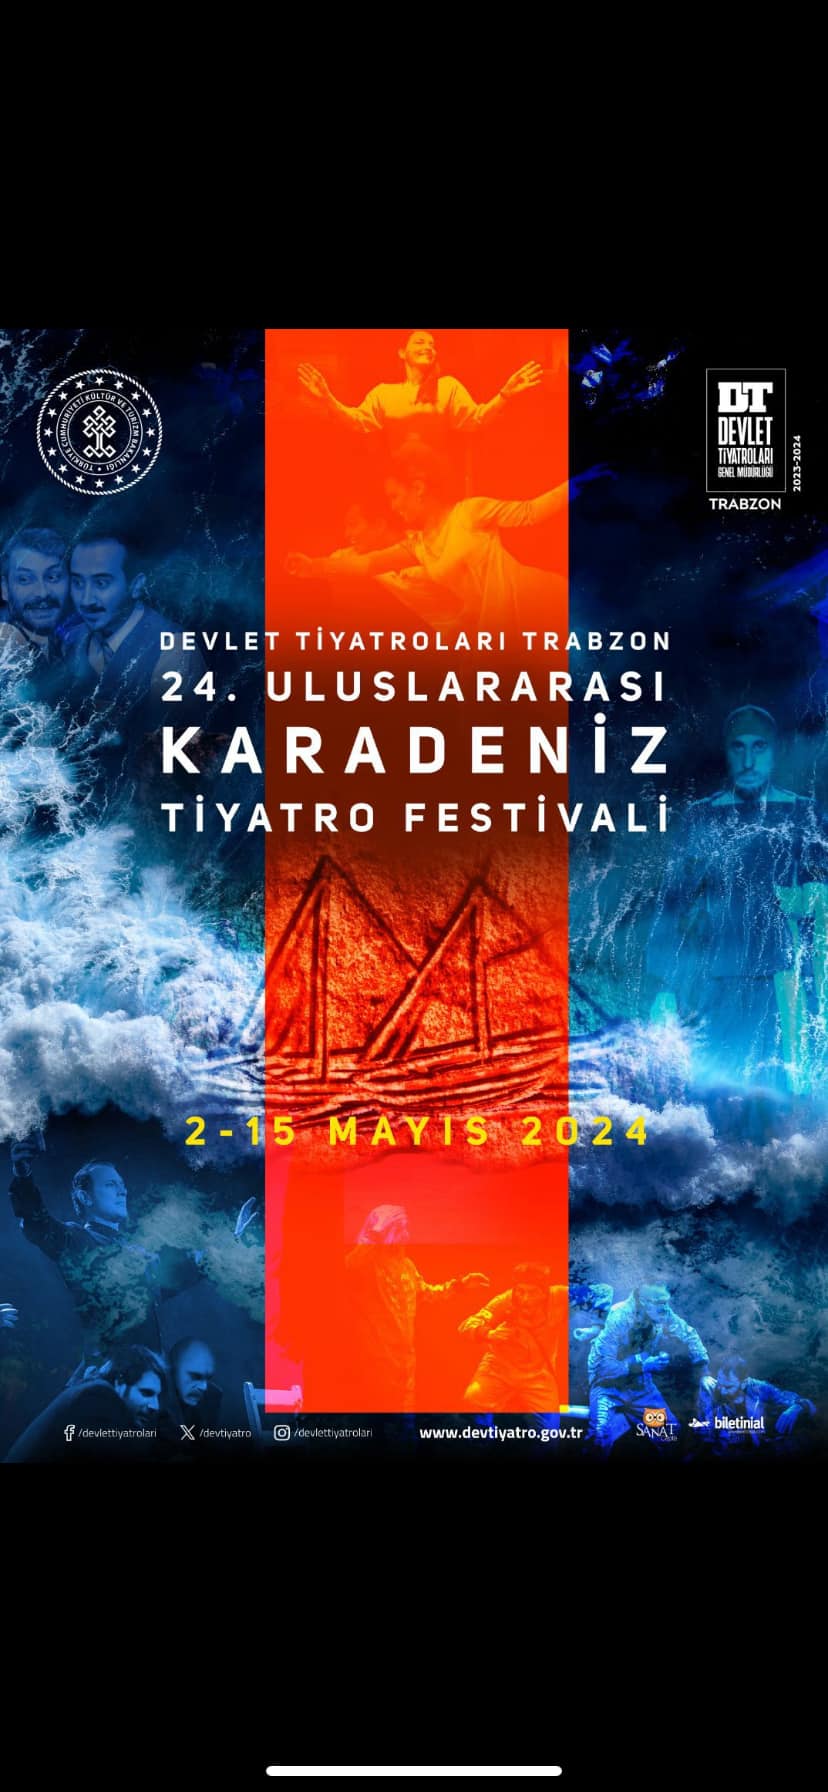 Tiyatro Severler Uluslararası Karadeniz Tiyatro Festivali'ne Hazır Olun!